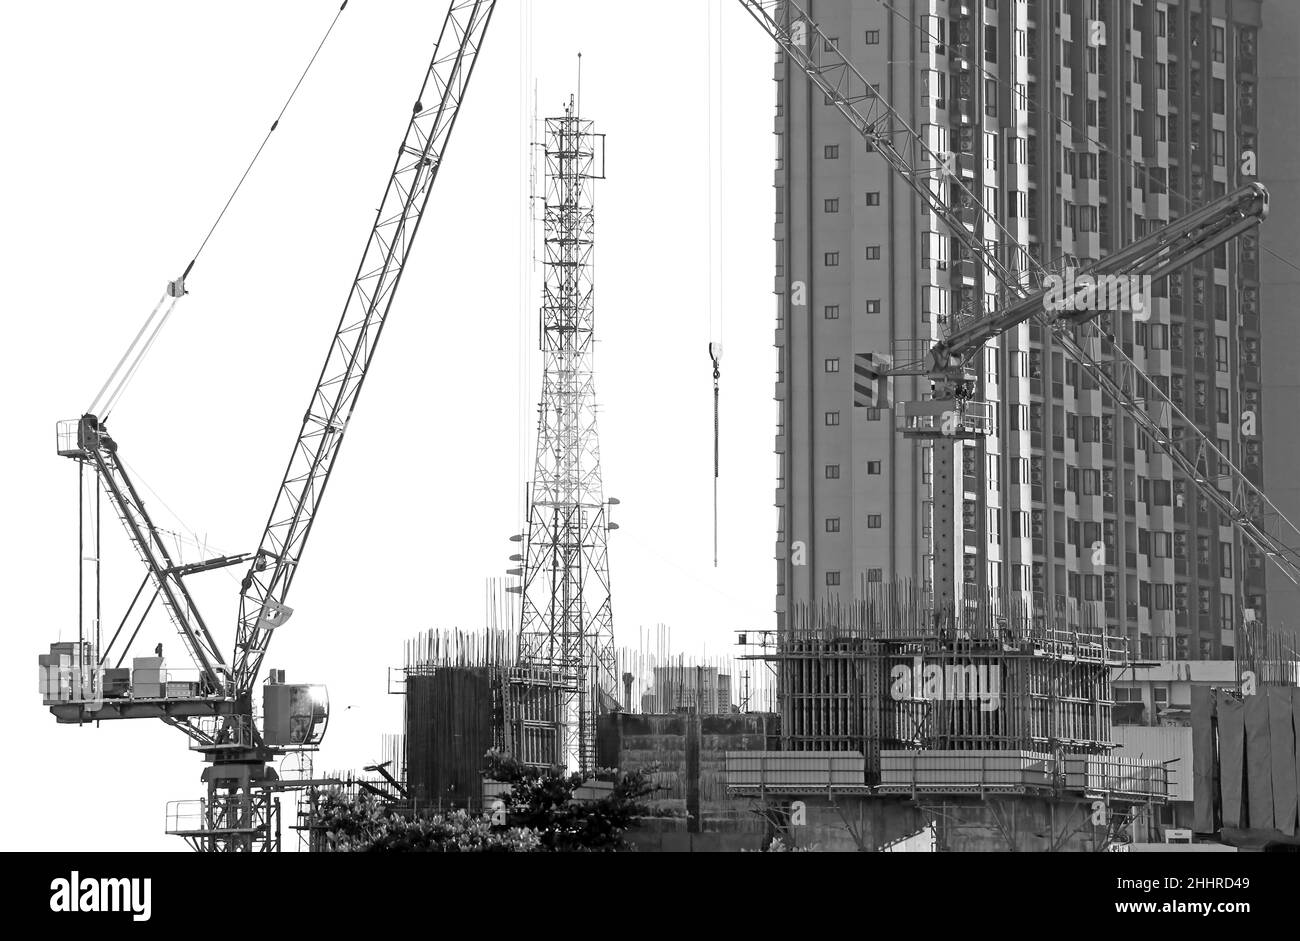 Immagine monocromatica delle gru in cantiere con una torre di telecomunicazione sullo sfondo Foto Stock